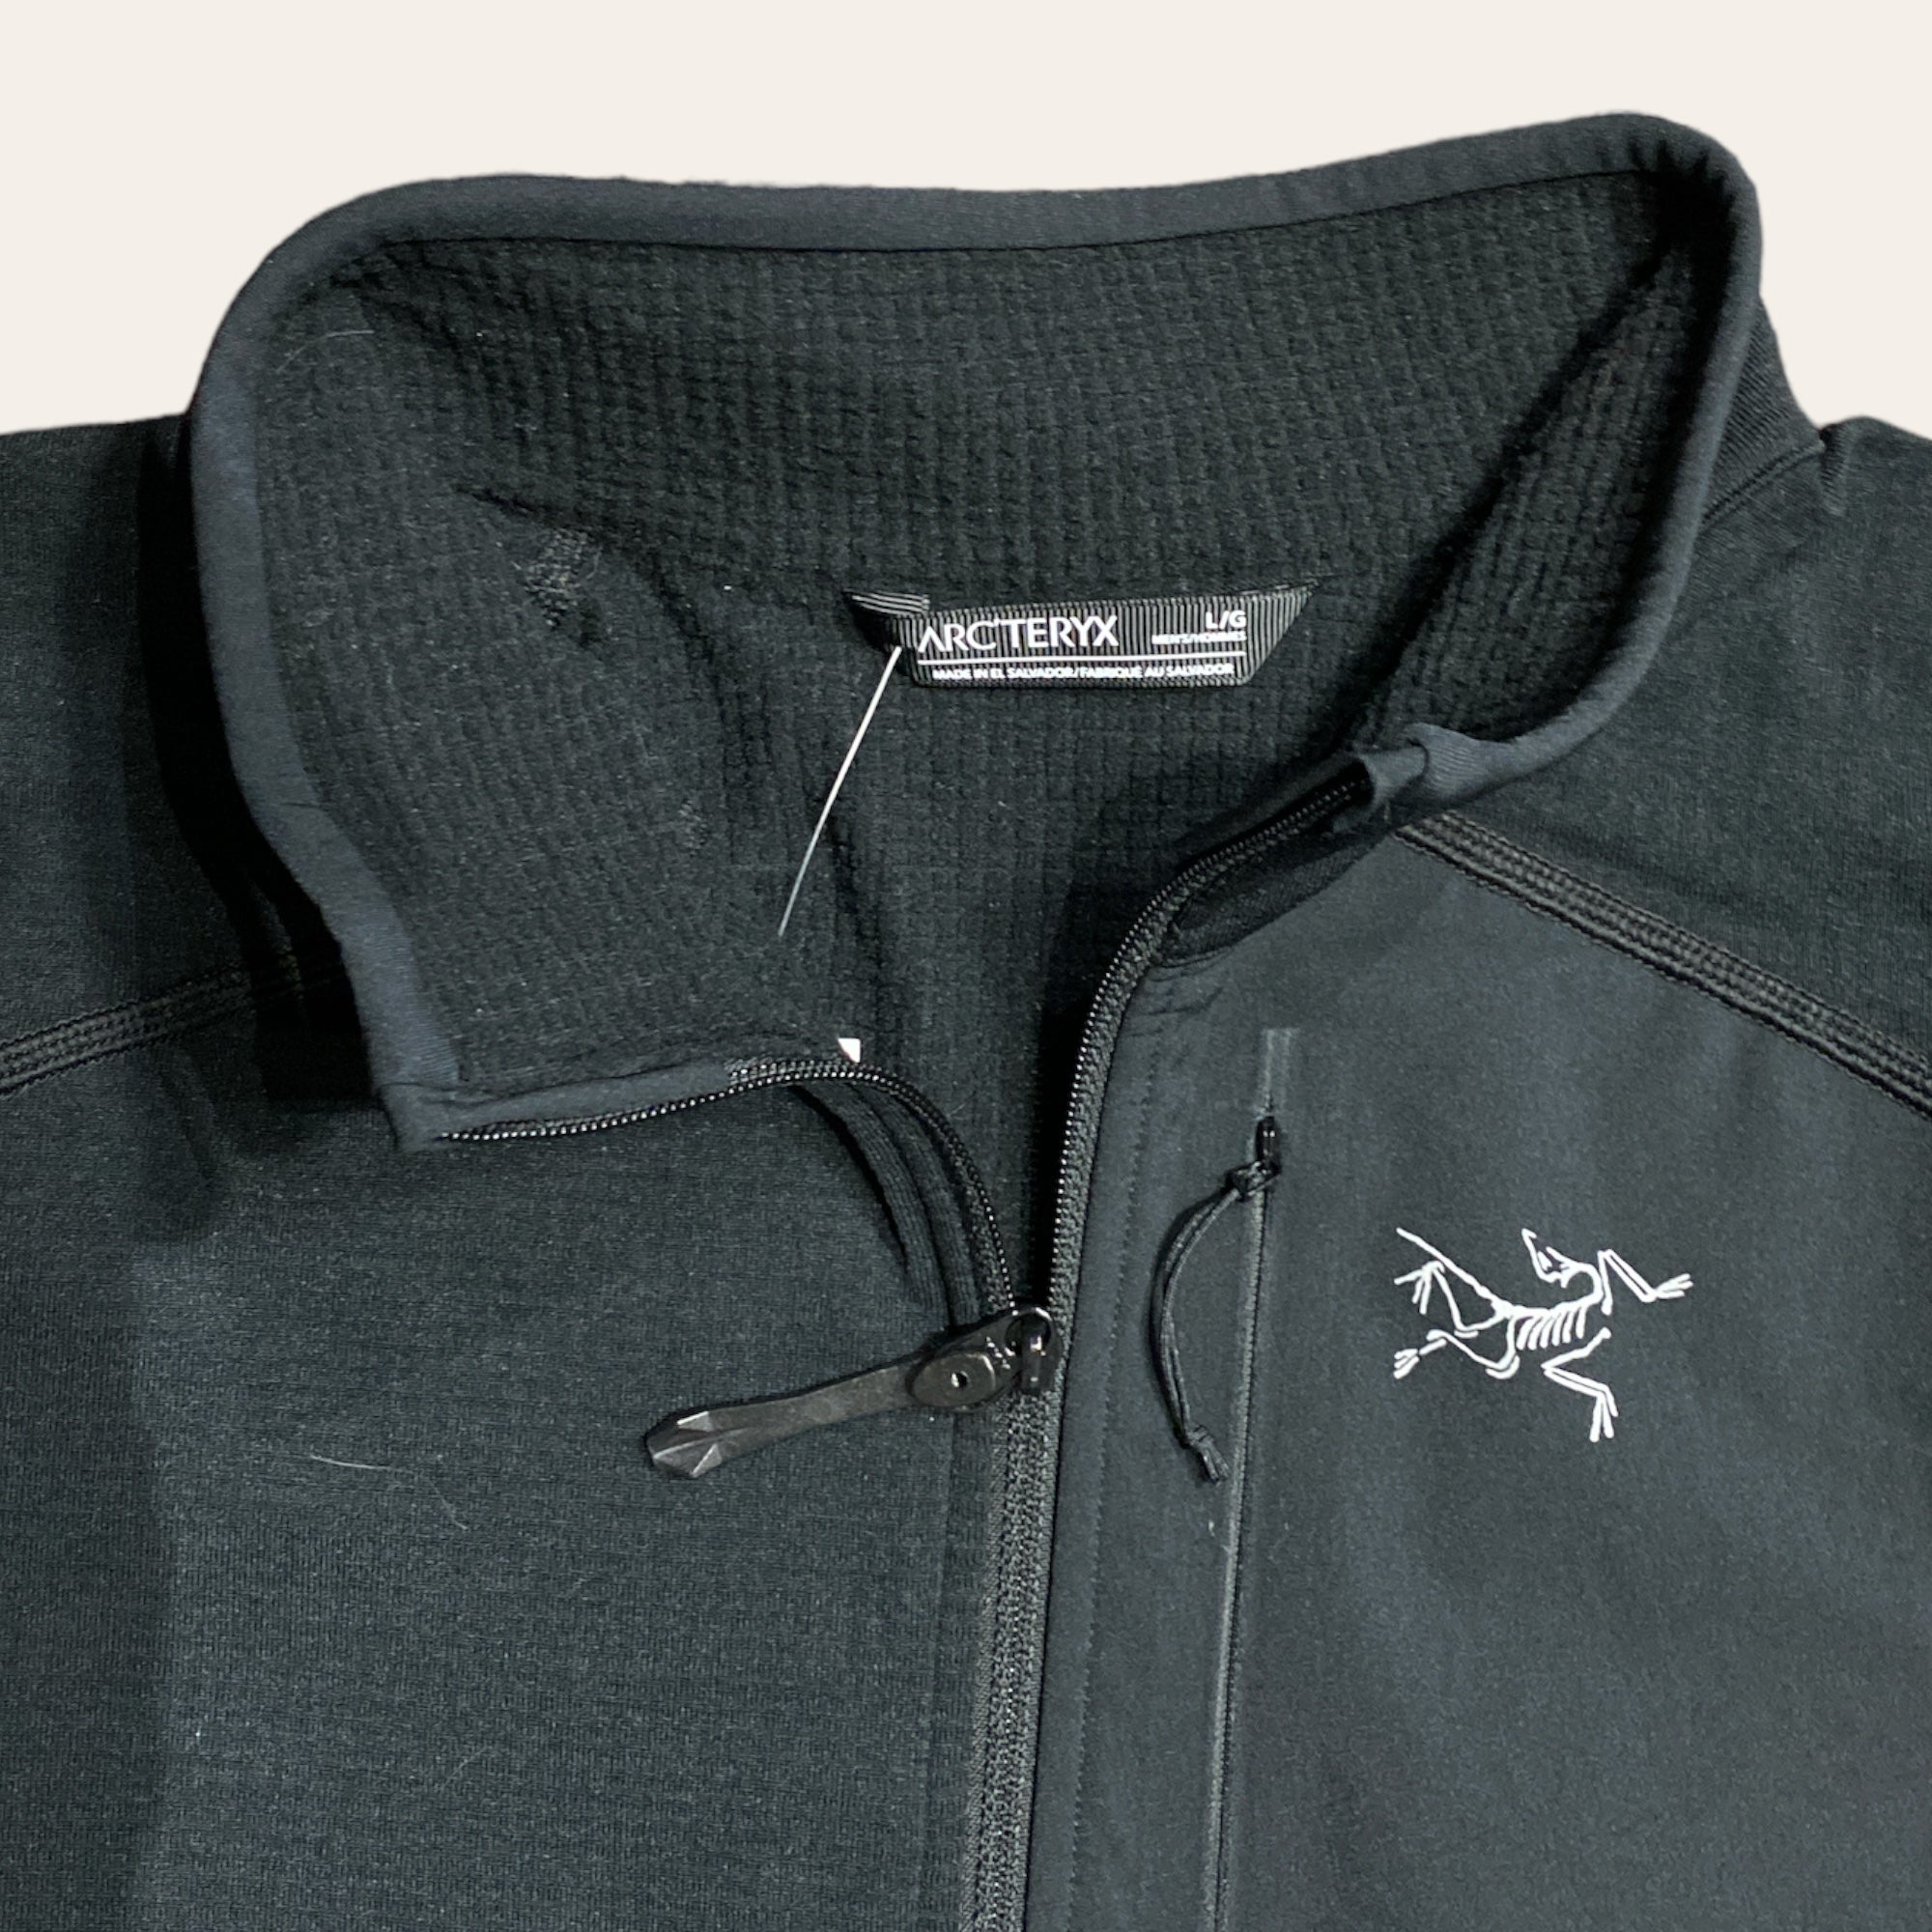 Brand New Arc'teryx Delta Jacket Size M